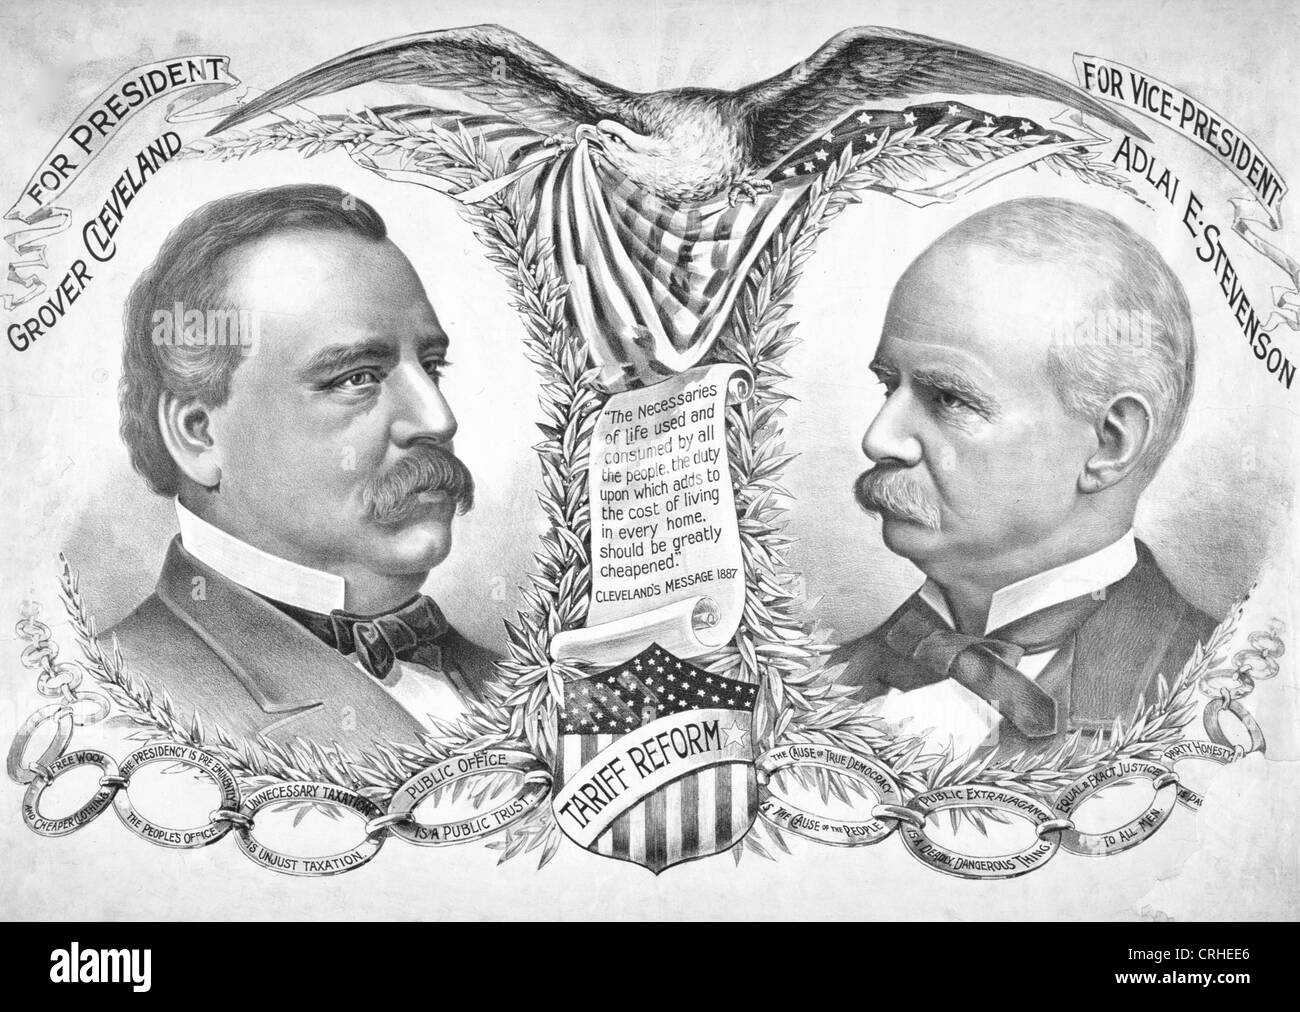 Grover Cleveland per Presidente - Adlai Stevenson per Vice Presidente - Campagna annuncio in USA elezioni presidenziali del 1892 Foto Stock